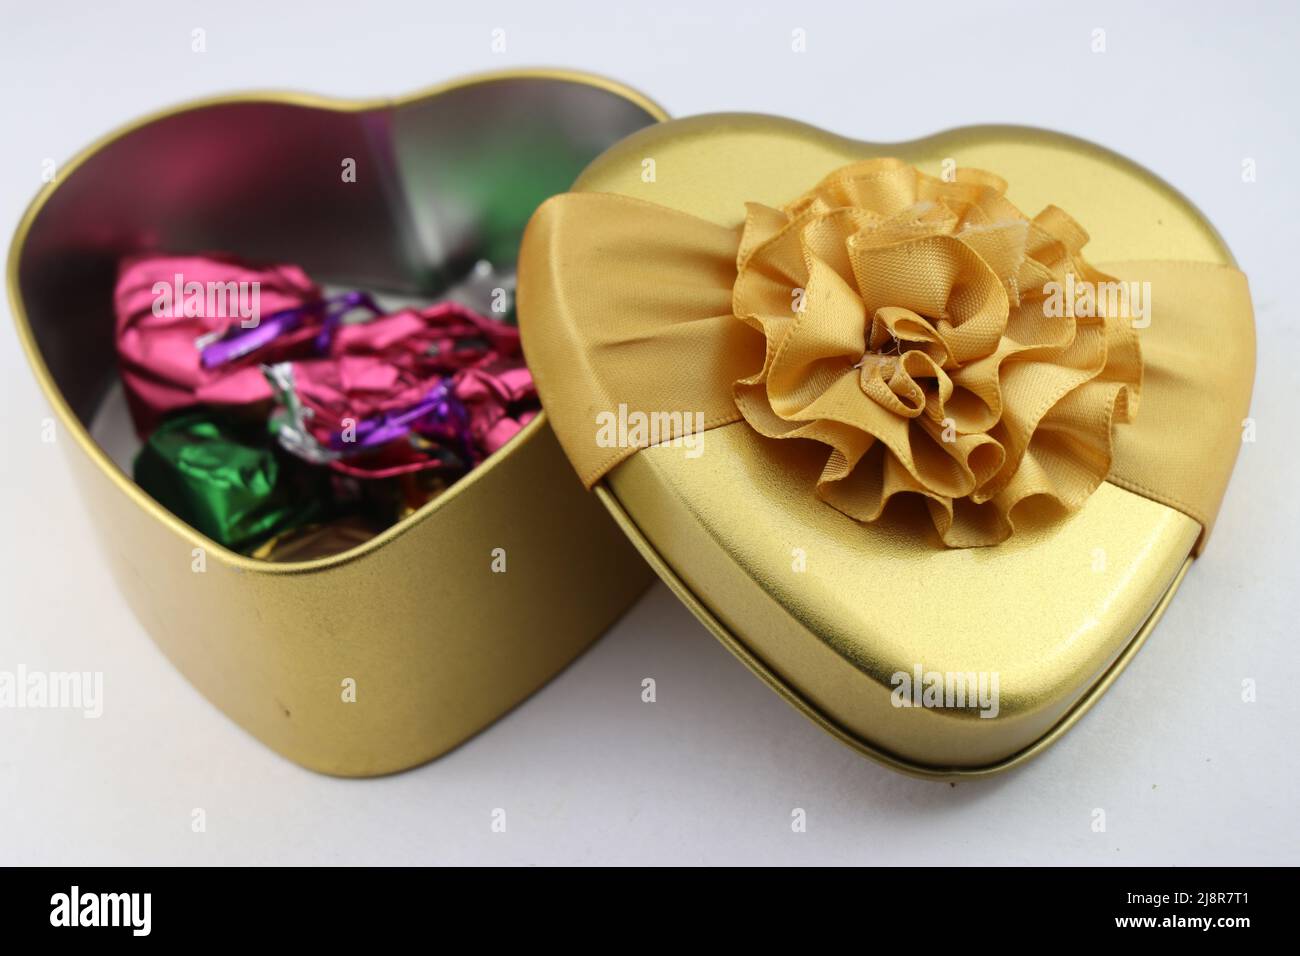 Herzförmige Geschenkschachtel mit Pralinen innen auf weißem Hintergrund, Geschenkschachteln für Geburtstage, Valentinstag und andere besondere Veranstaltungen Stockfoto